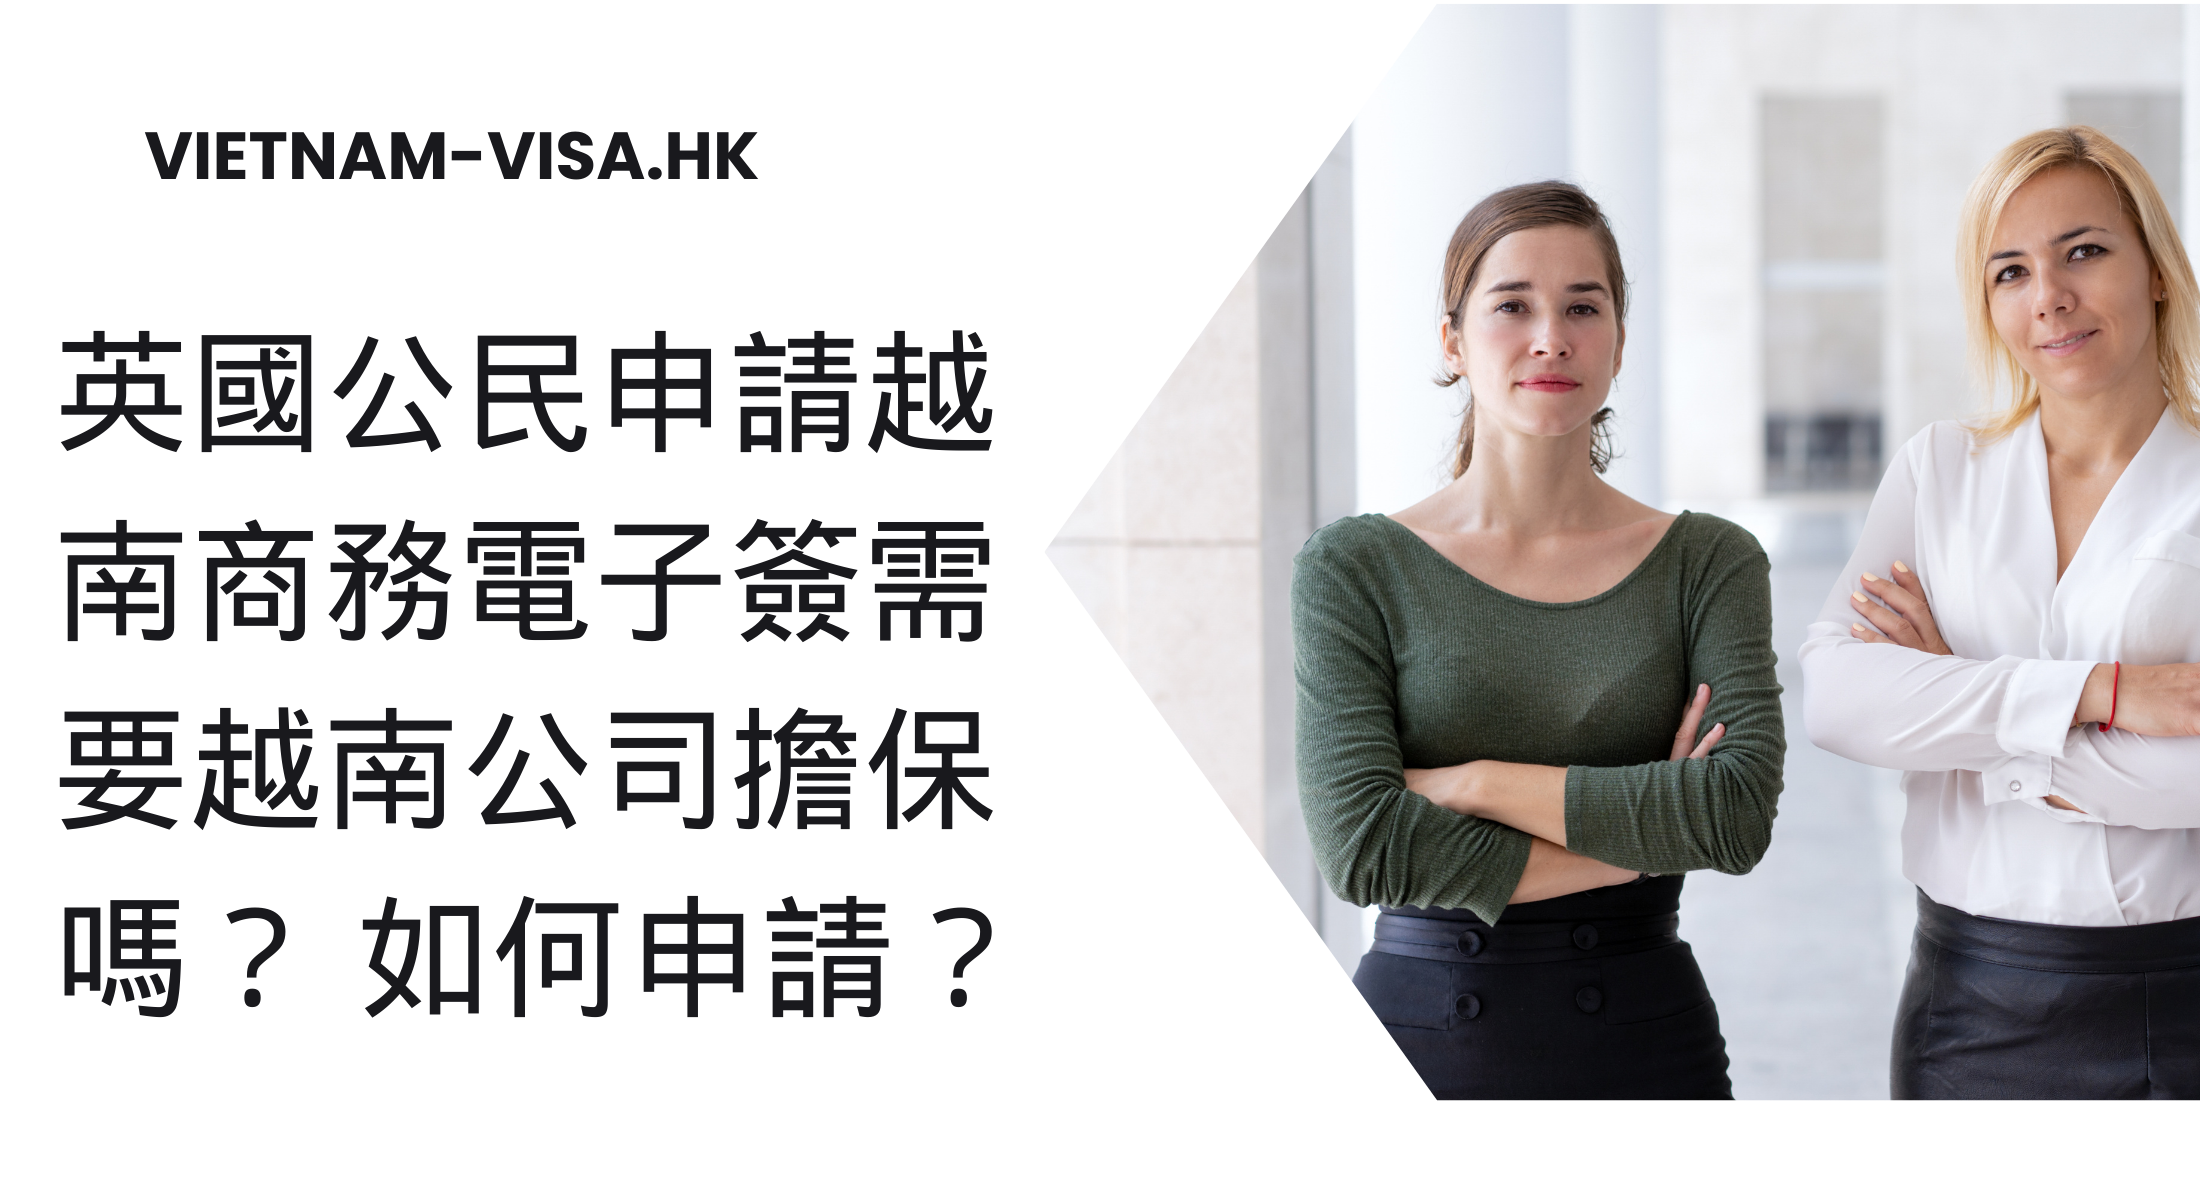 英國公民申請越南商務電子簽需要越南公司擔保嗎？ 如何申請？